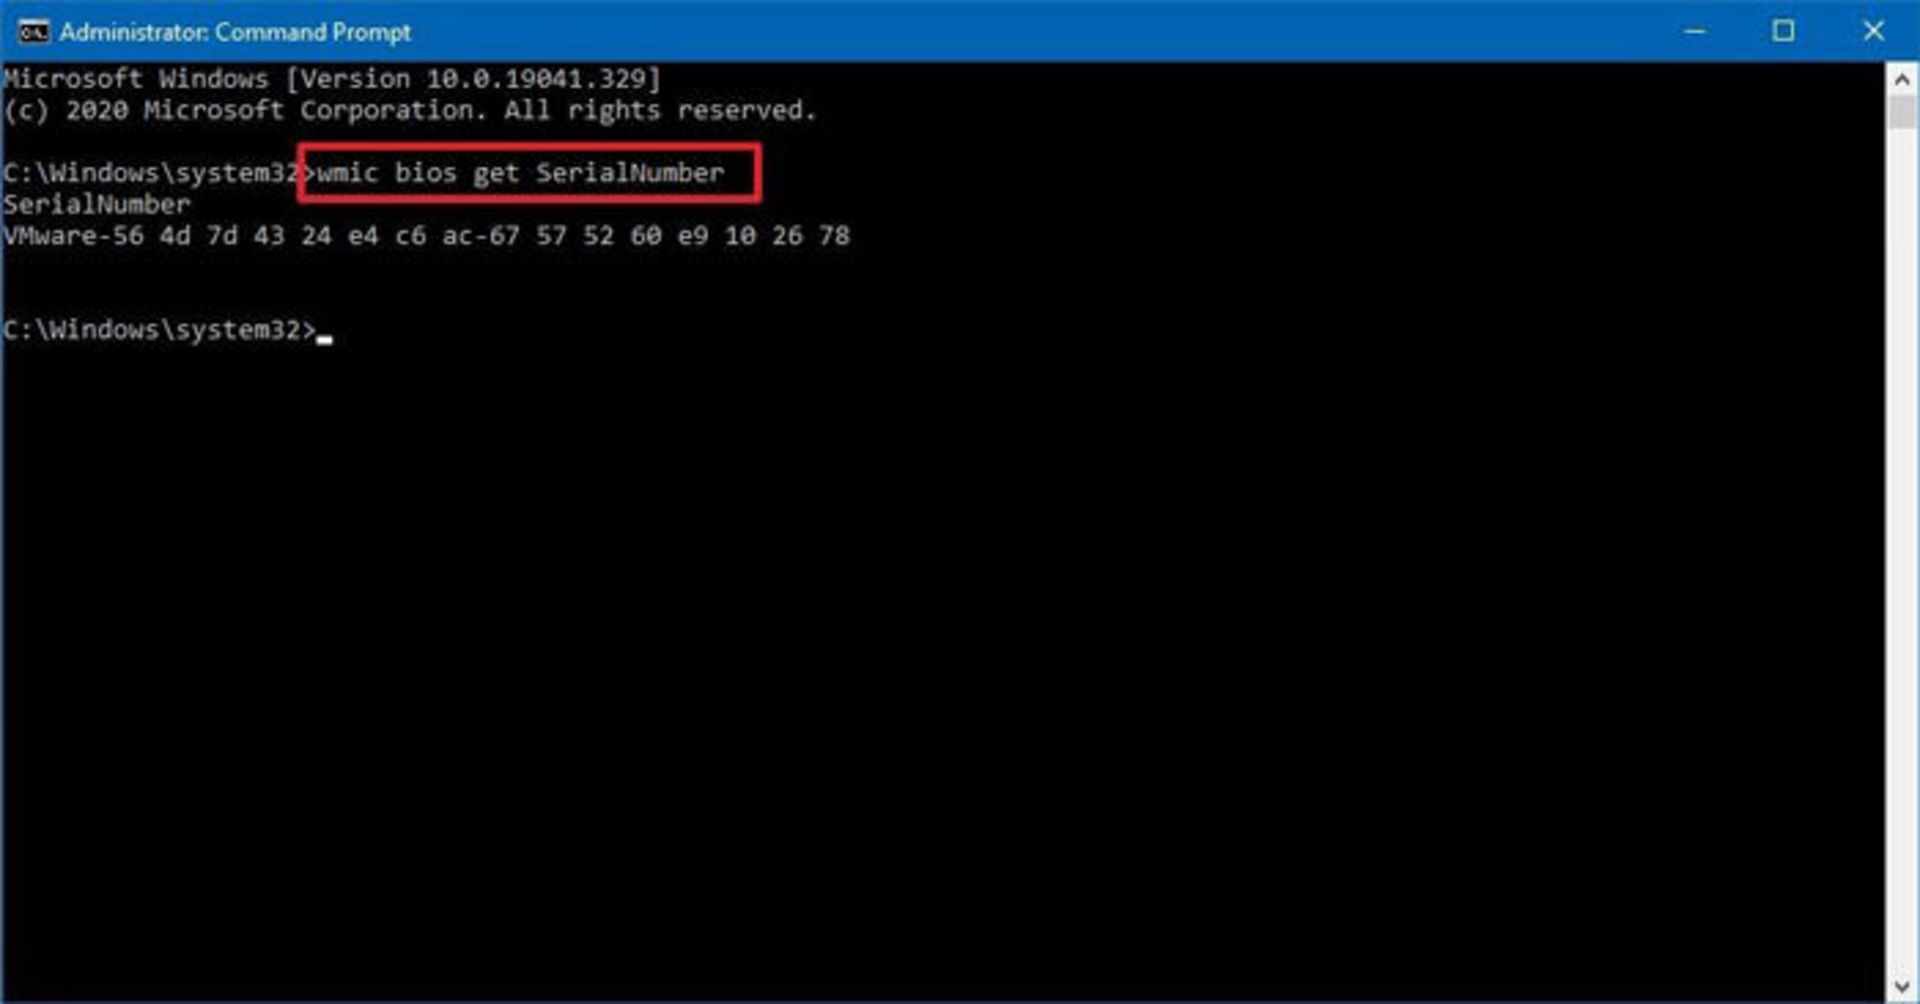 نمایش شماره سریال کامپیوتر با Command Prompt در ویندوز 10